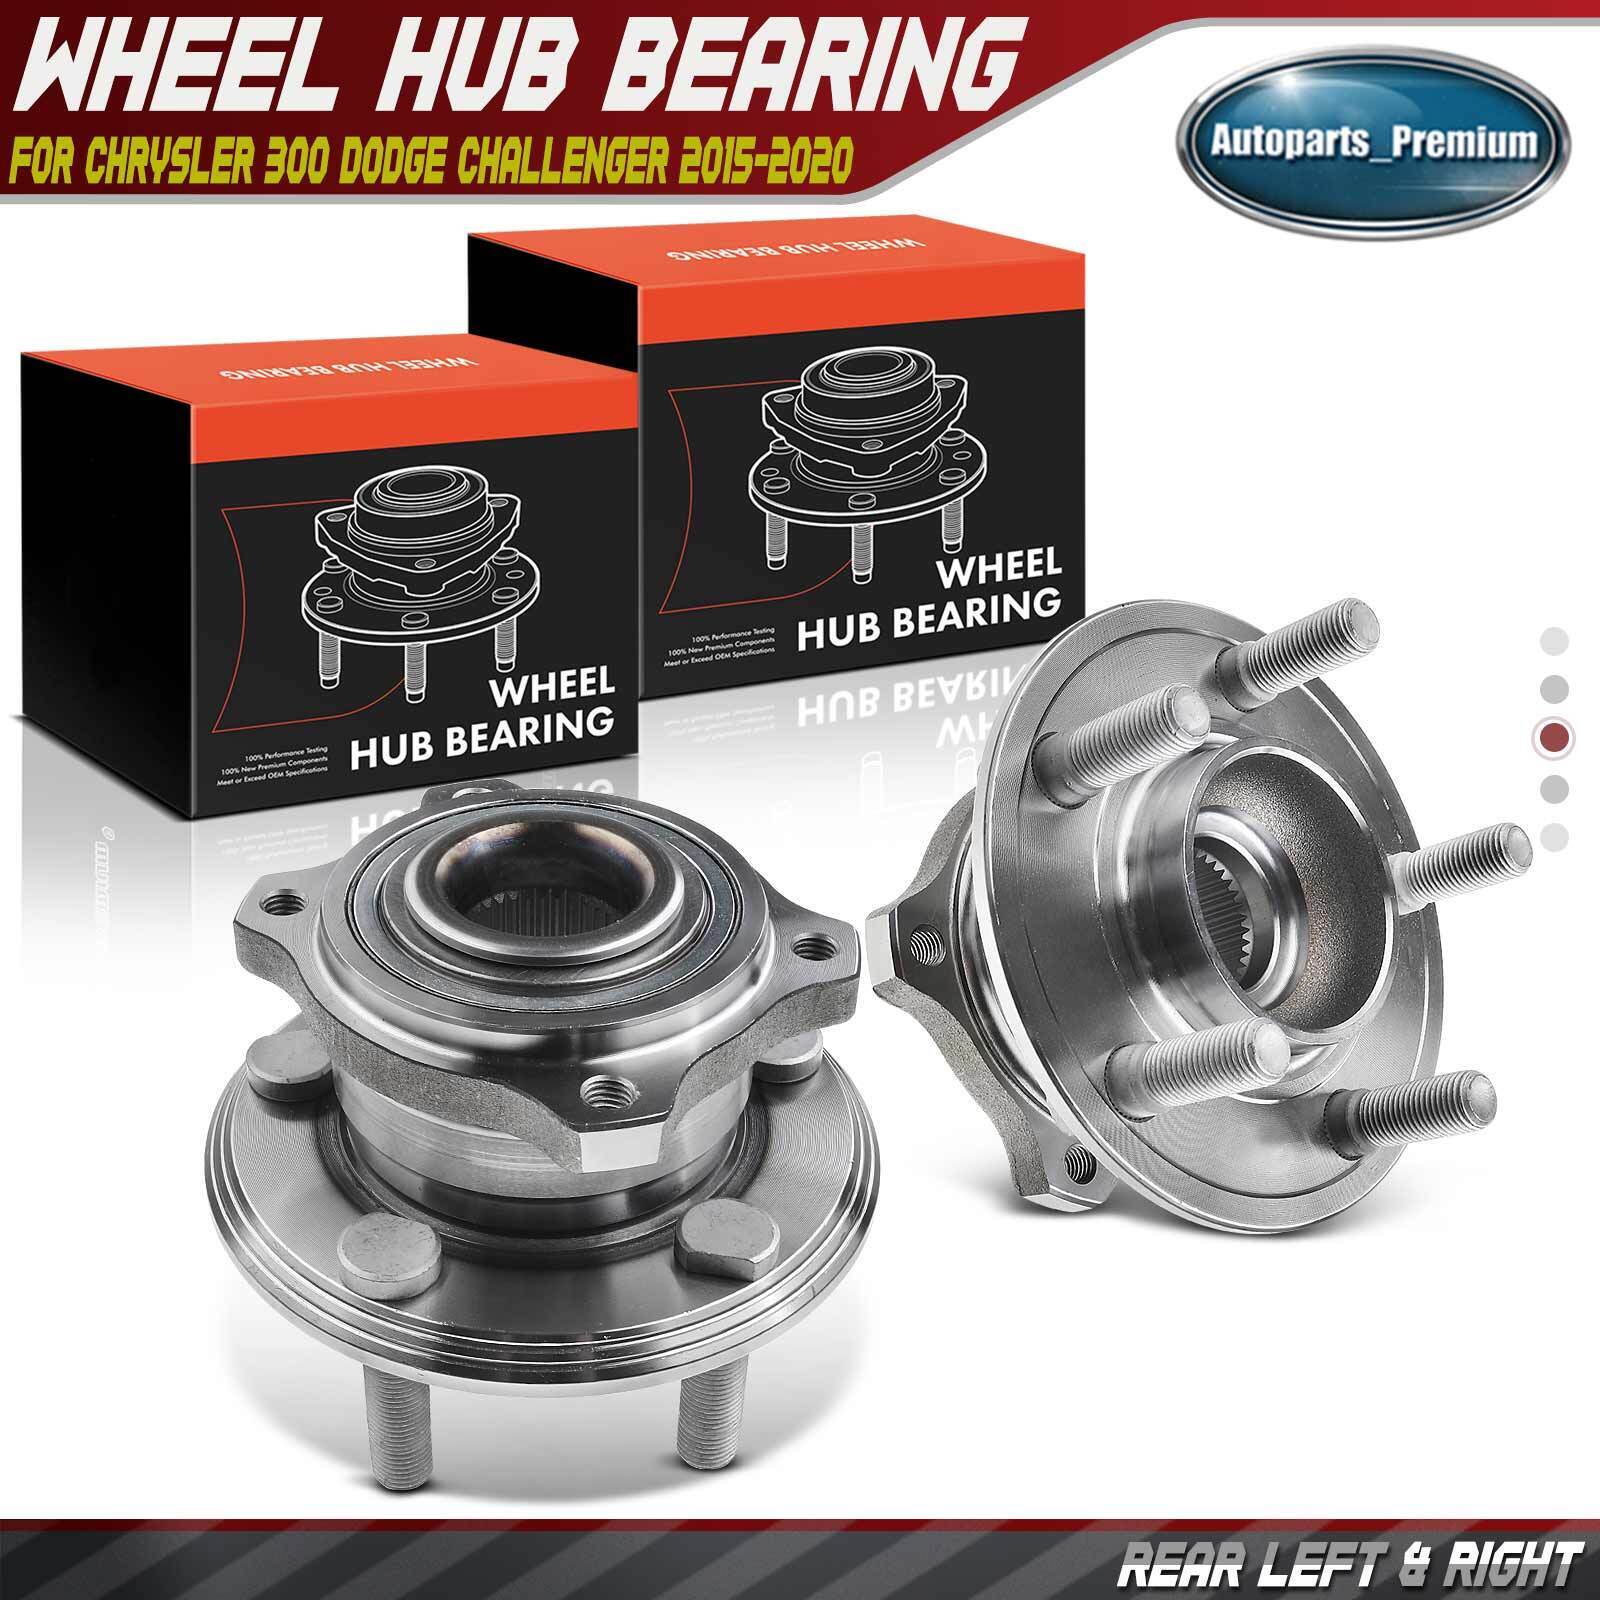 2x Rear Wheel Hub Bearing Assembly for Chrysler 300 Dodge Challenger 2015-2020